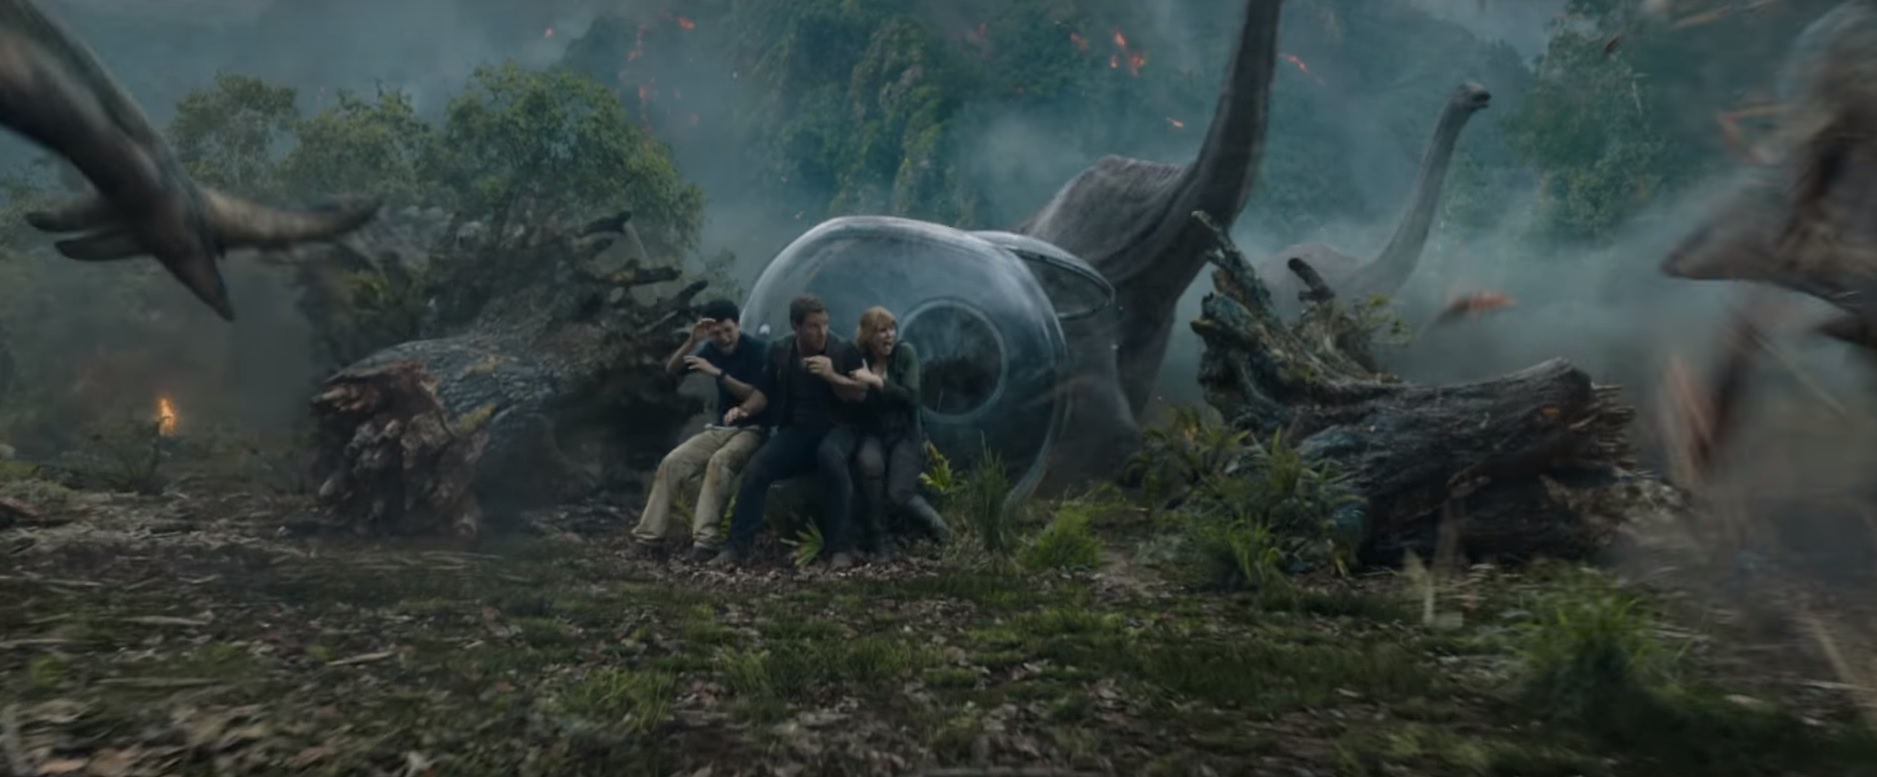 Un nouveau teaser explosif pour Jurassic World : Fallen Kingdom